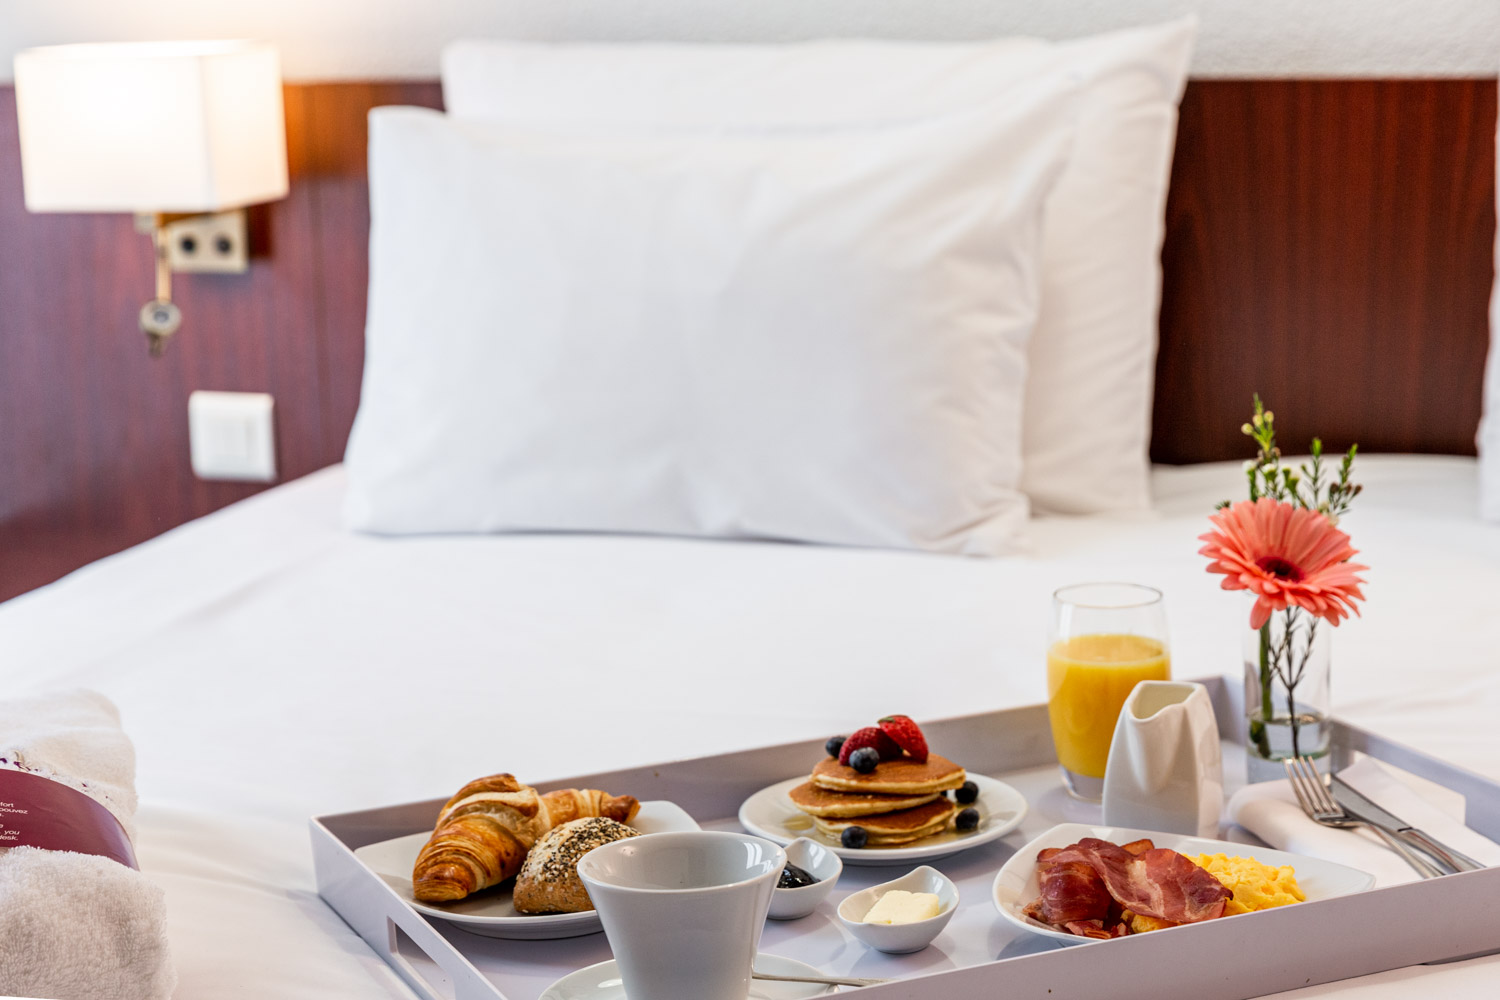 Photographie d'un plateau avec un petit déjeuner complet dessus. Le plateau est sur le lit de la chambre d'hôtel.